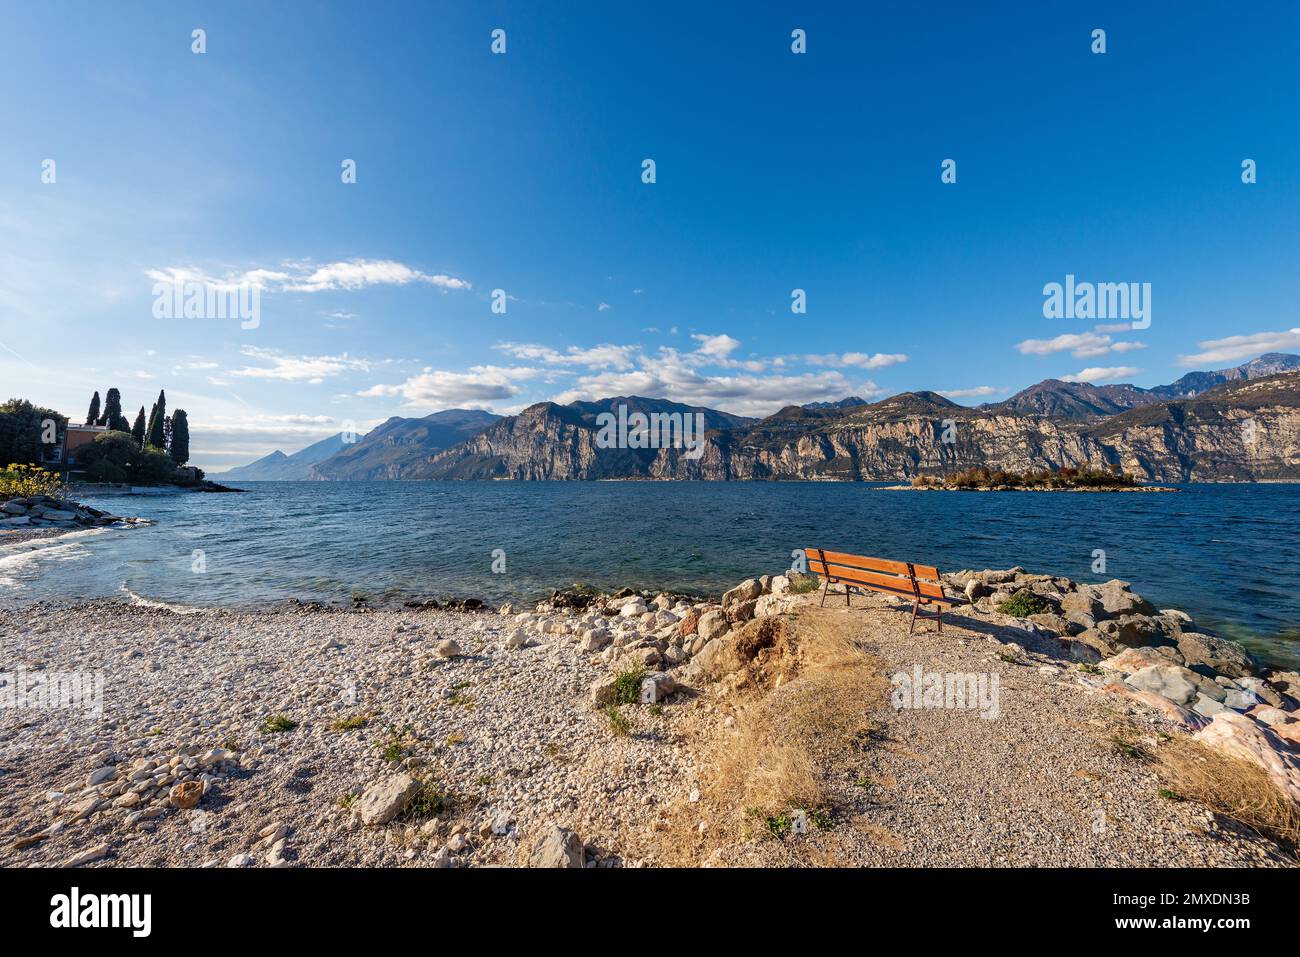 Spiaggia del Lago di Garda (Lago di Garda) e Alpi italiane, vista dal piccolo paese di Malcesine, provincia di Verona, Italia, Veneto, Europa meridionale. Foto Stock